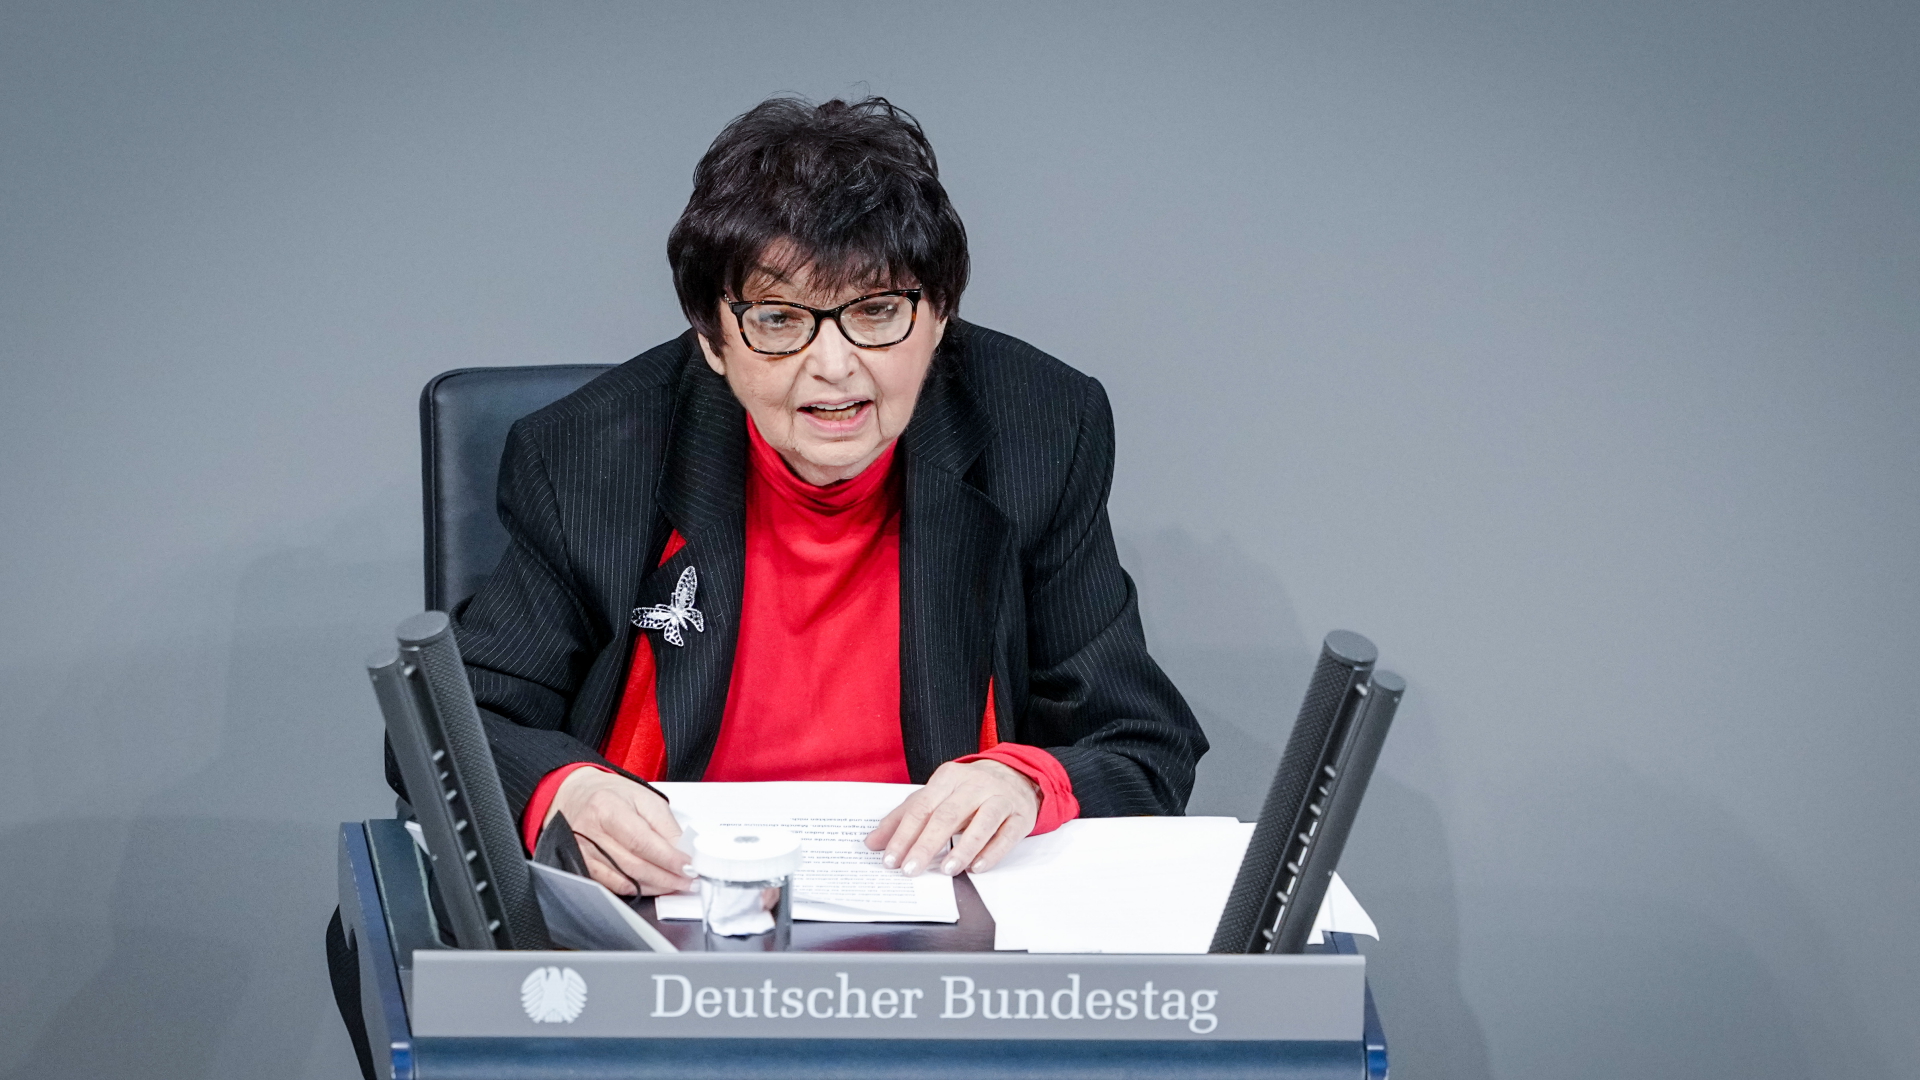 Die Holocaust-Überlebende Inge Auerbacher im Bundestag | dpa